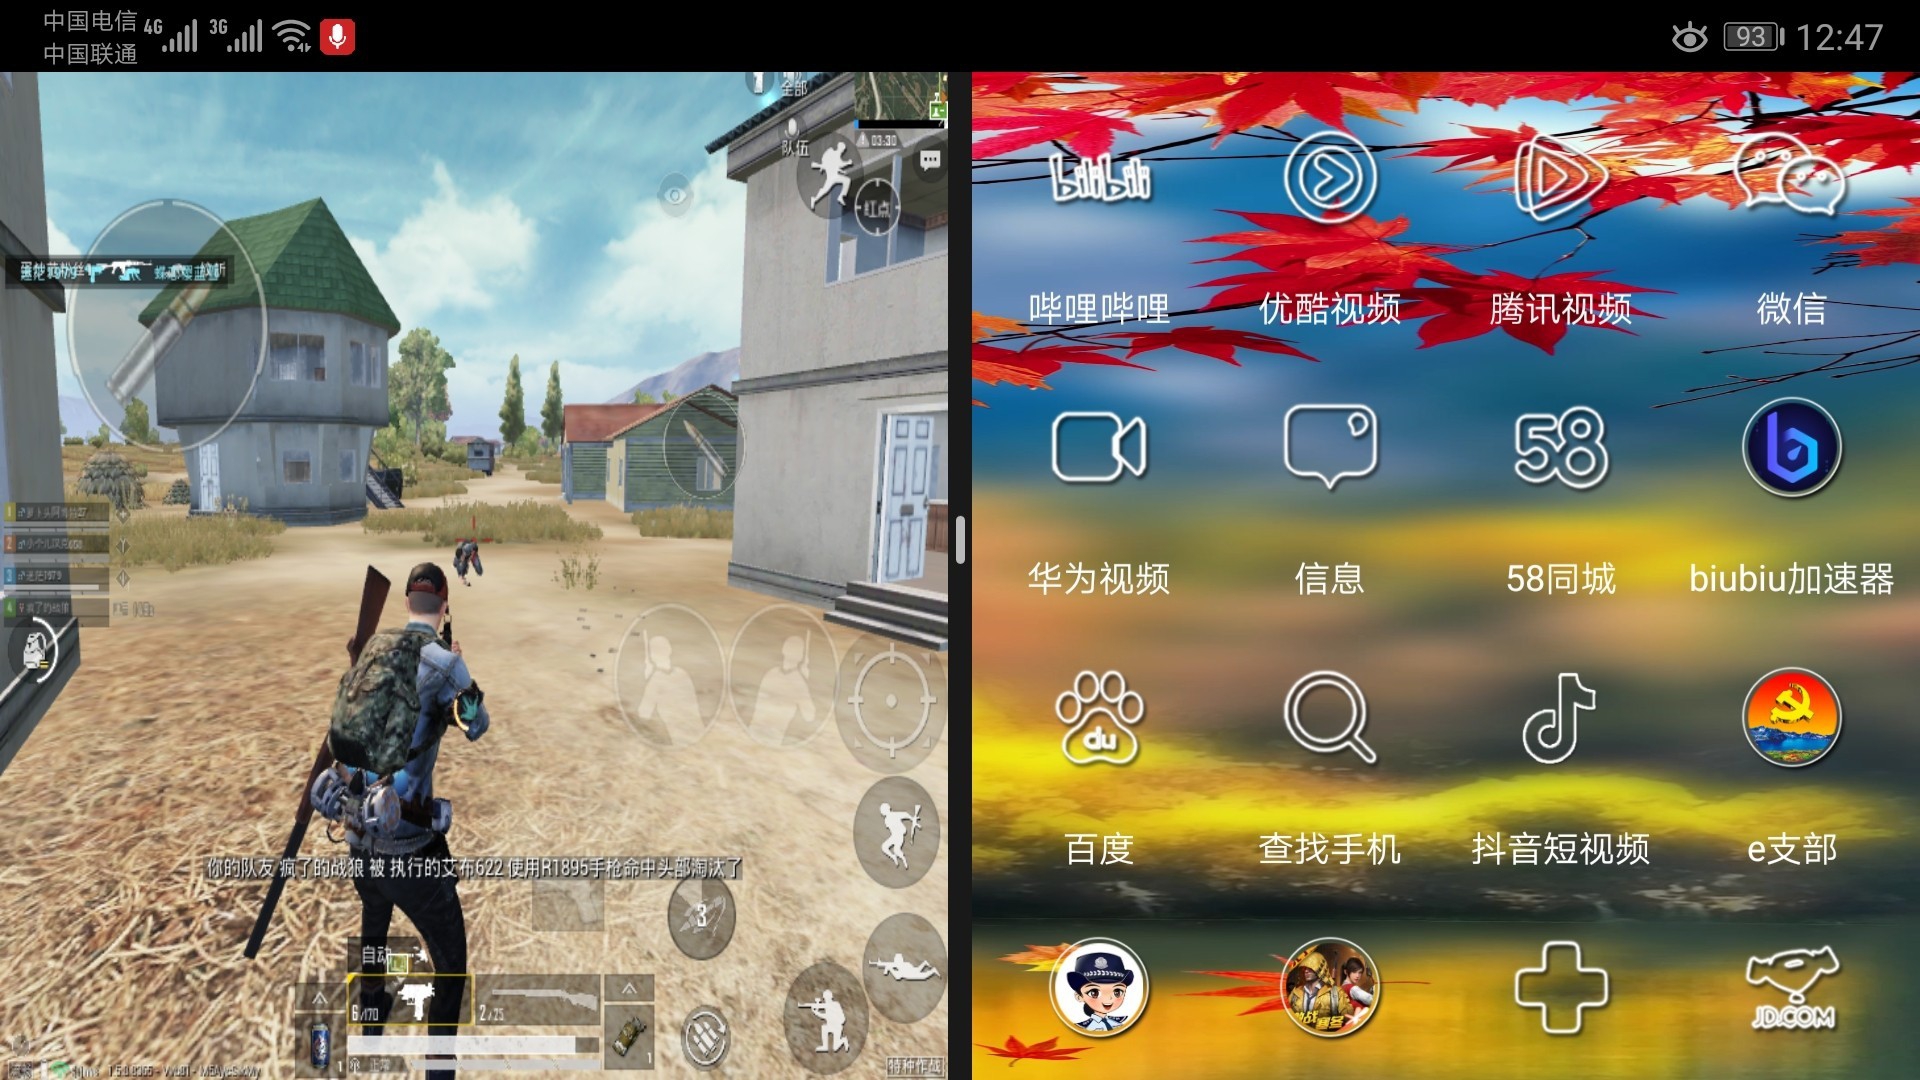 手机上可以分屏的自由游戏_能分屏玩游戏的手机_游戏分屏的手机